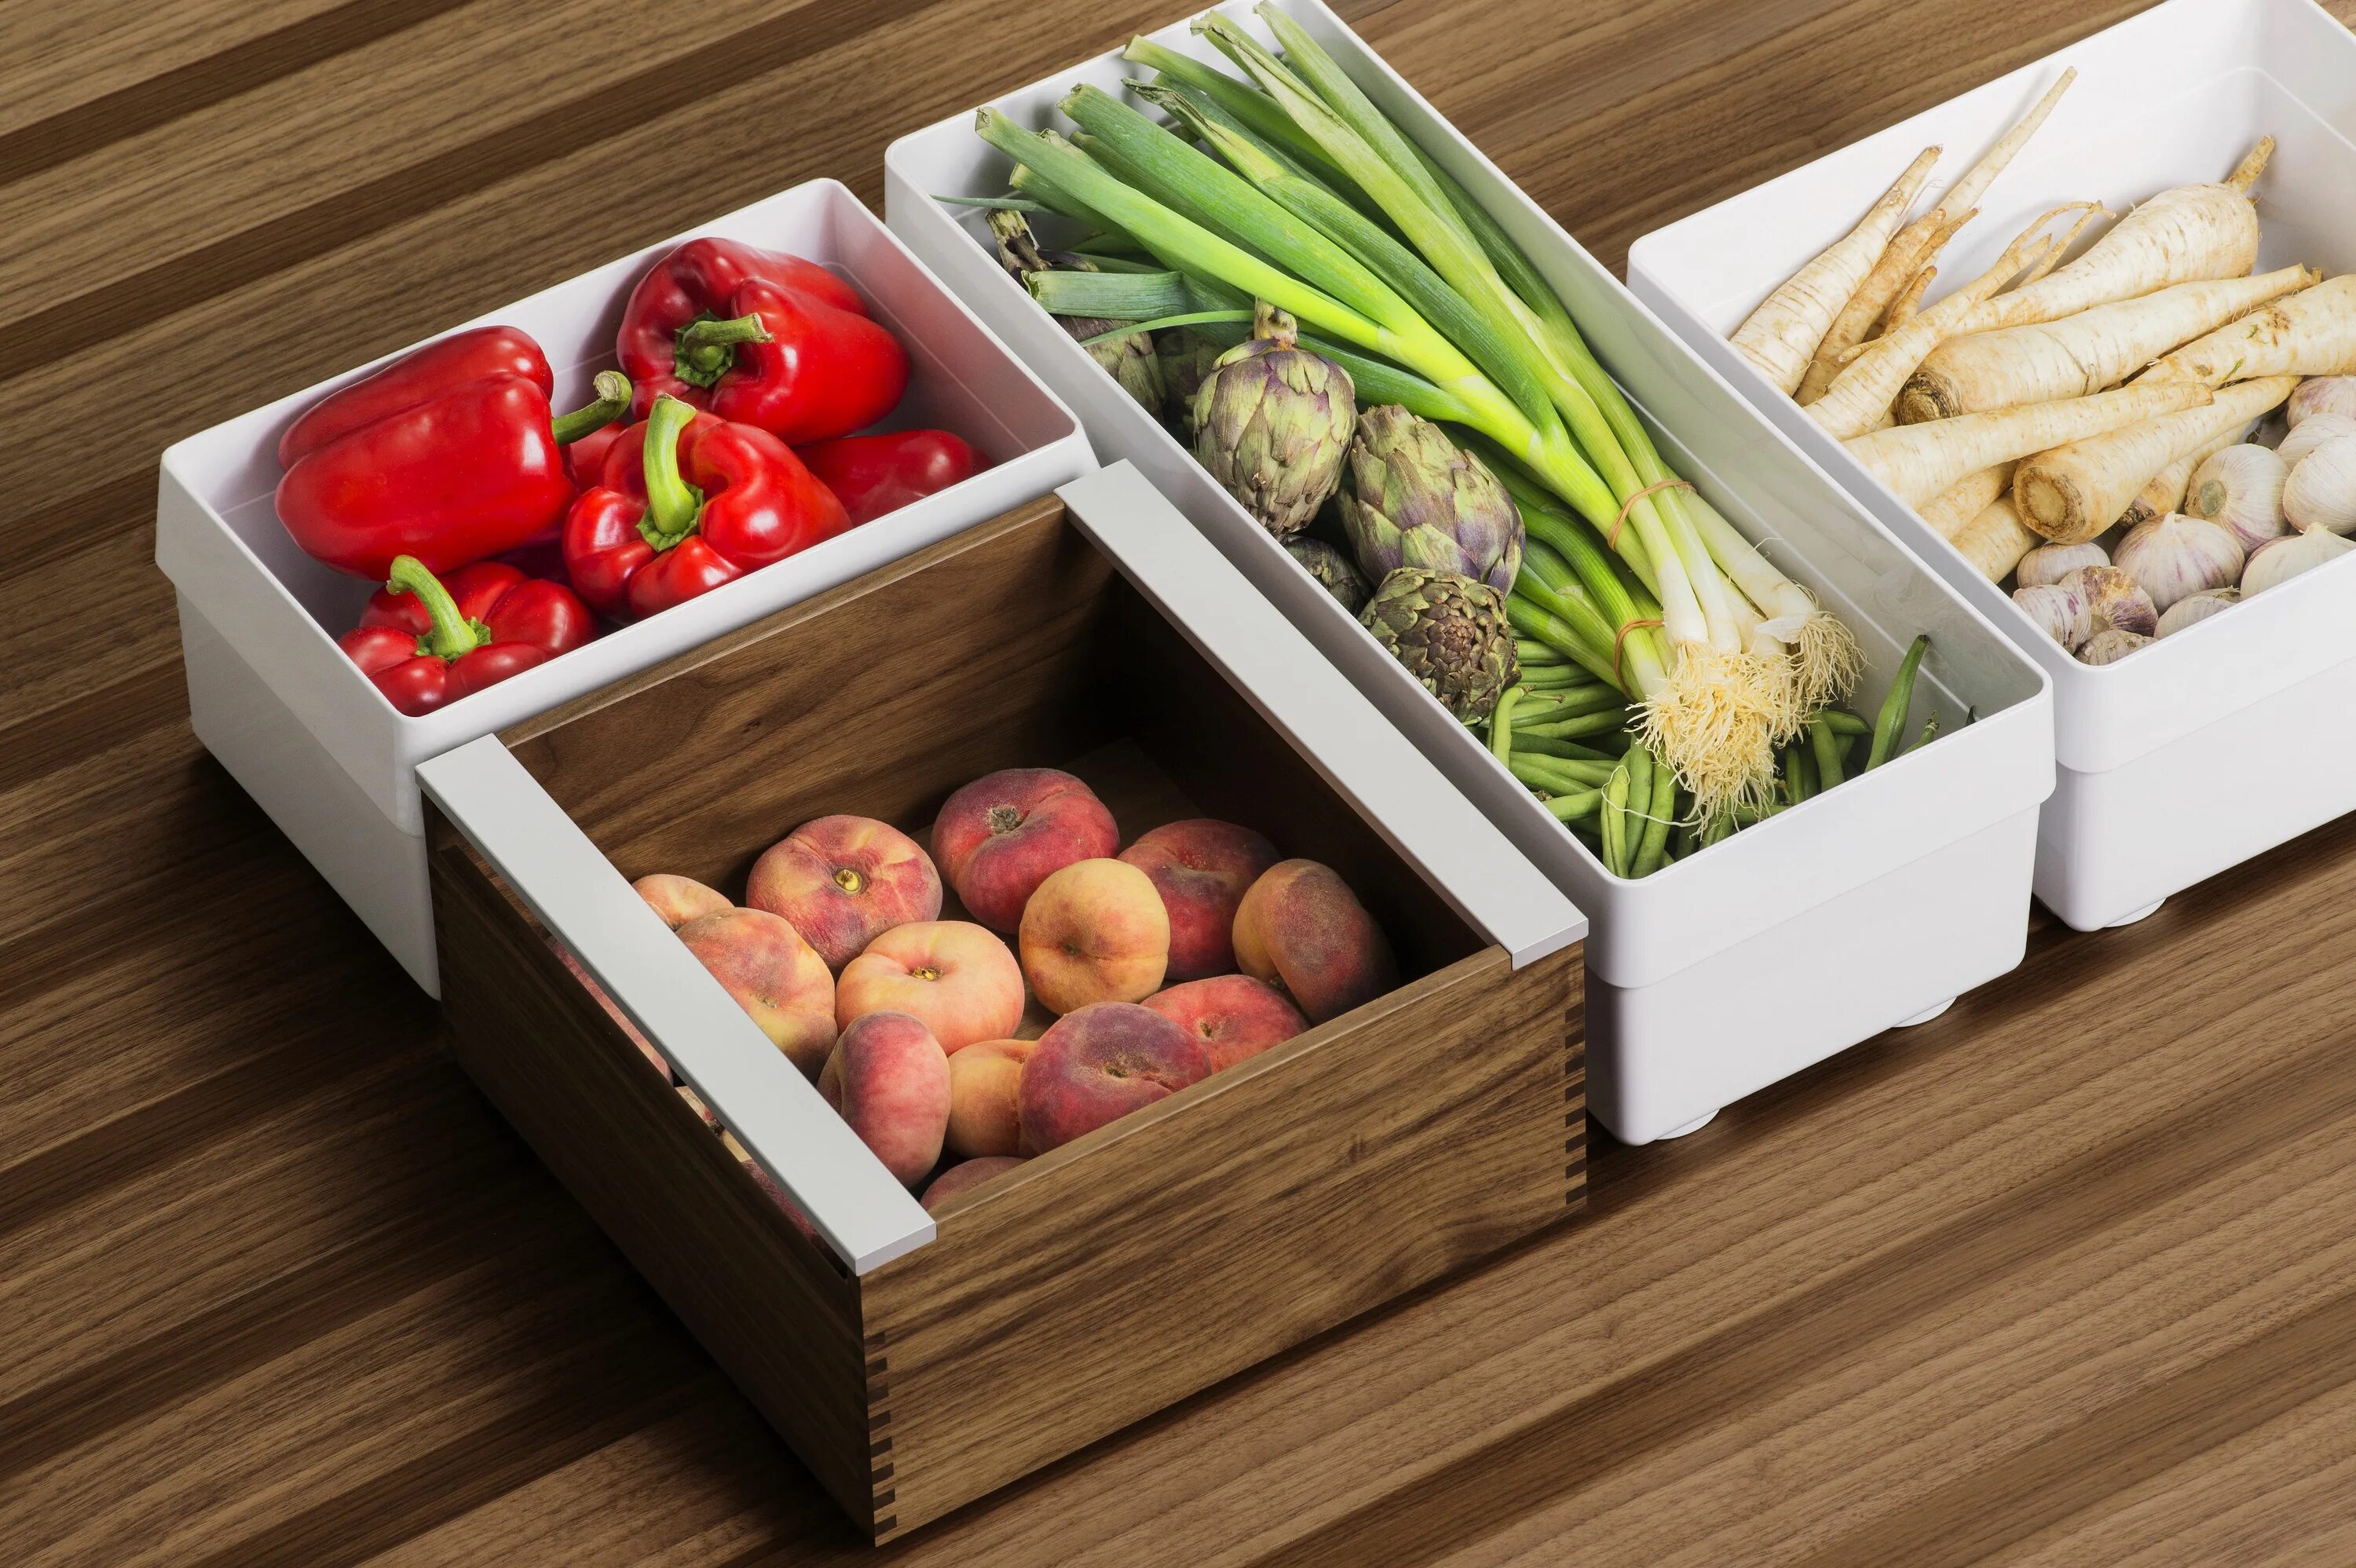 Correct foods. Овощи в ящике. Ящик для хранения продуктов. Хранение овощей и фруктов. Фрукты и овощи в ящике.